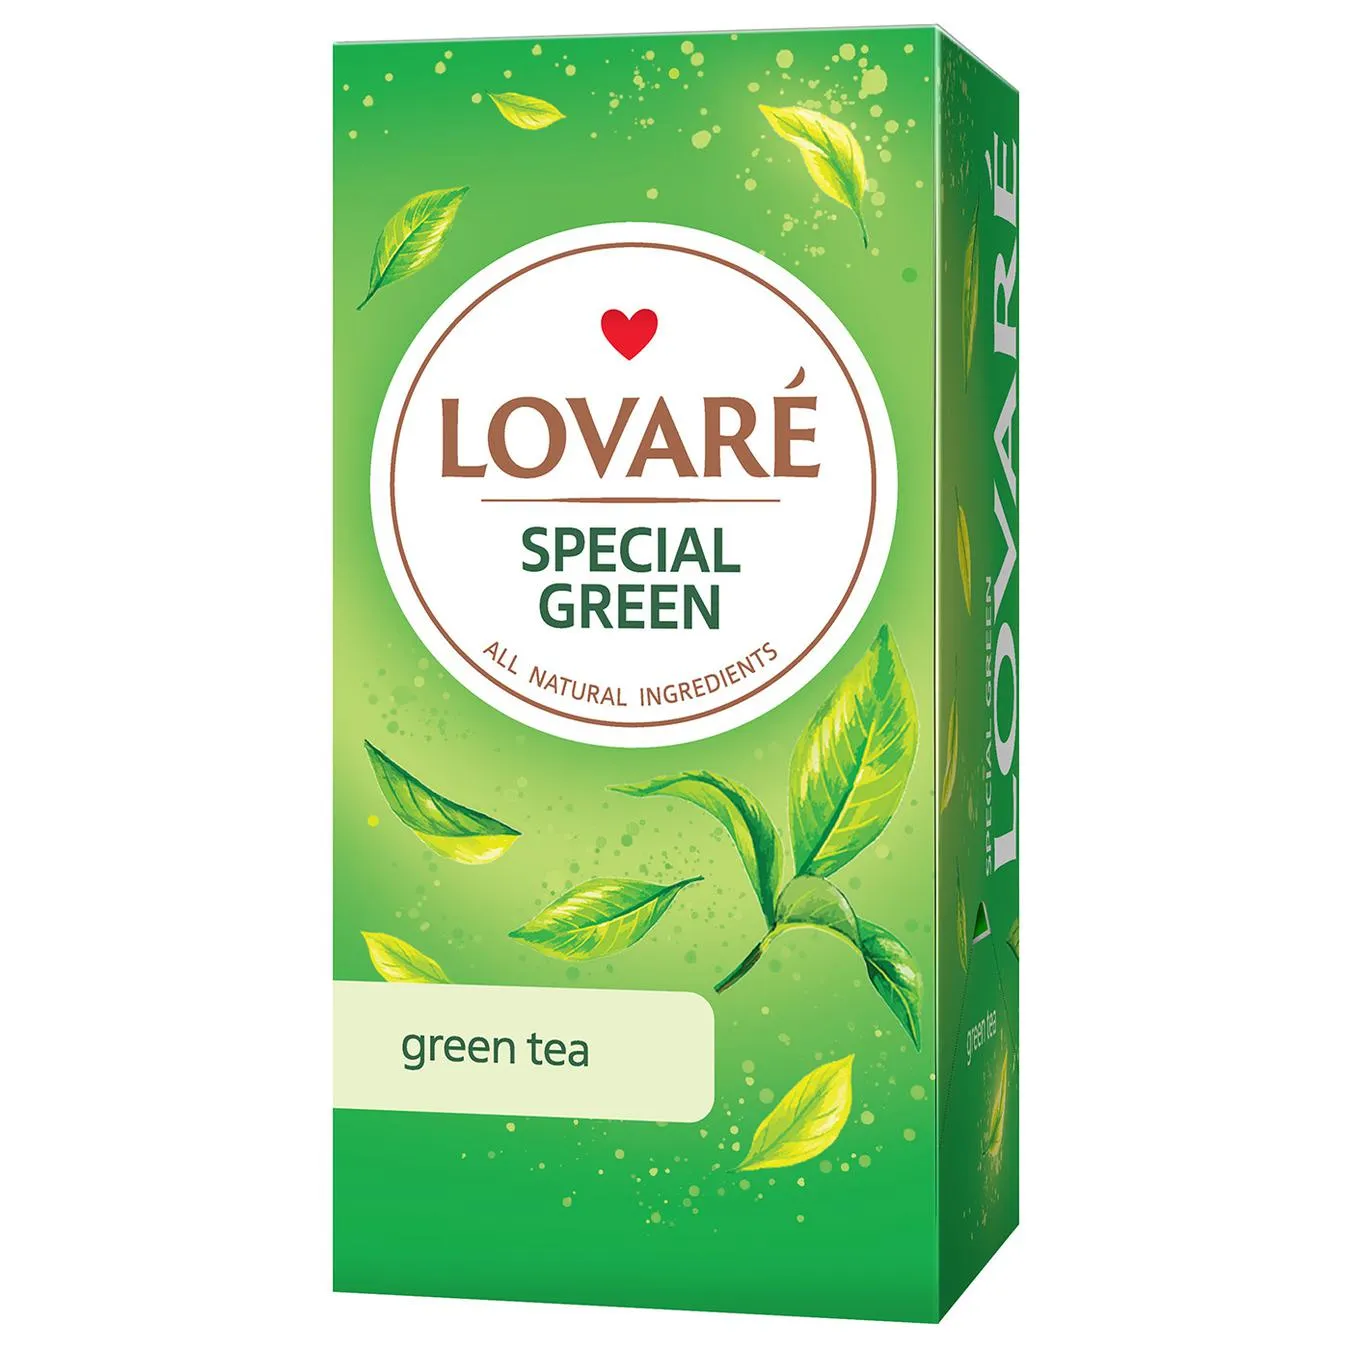 Lovare Special green green tea 24pcs*1.5g